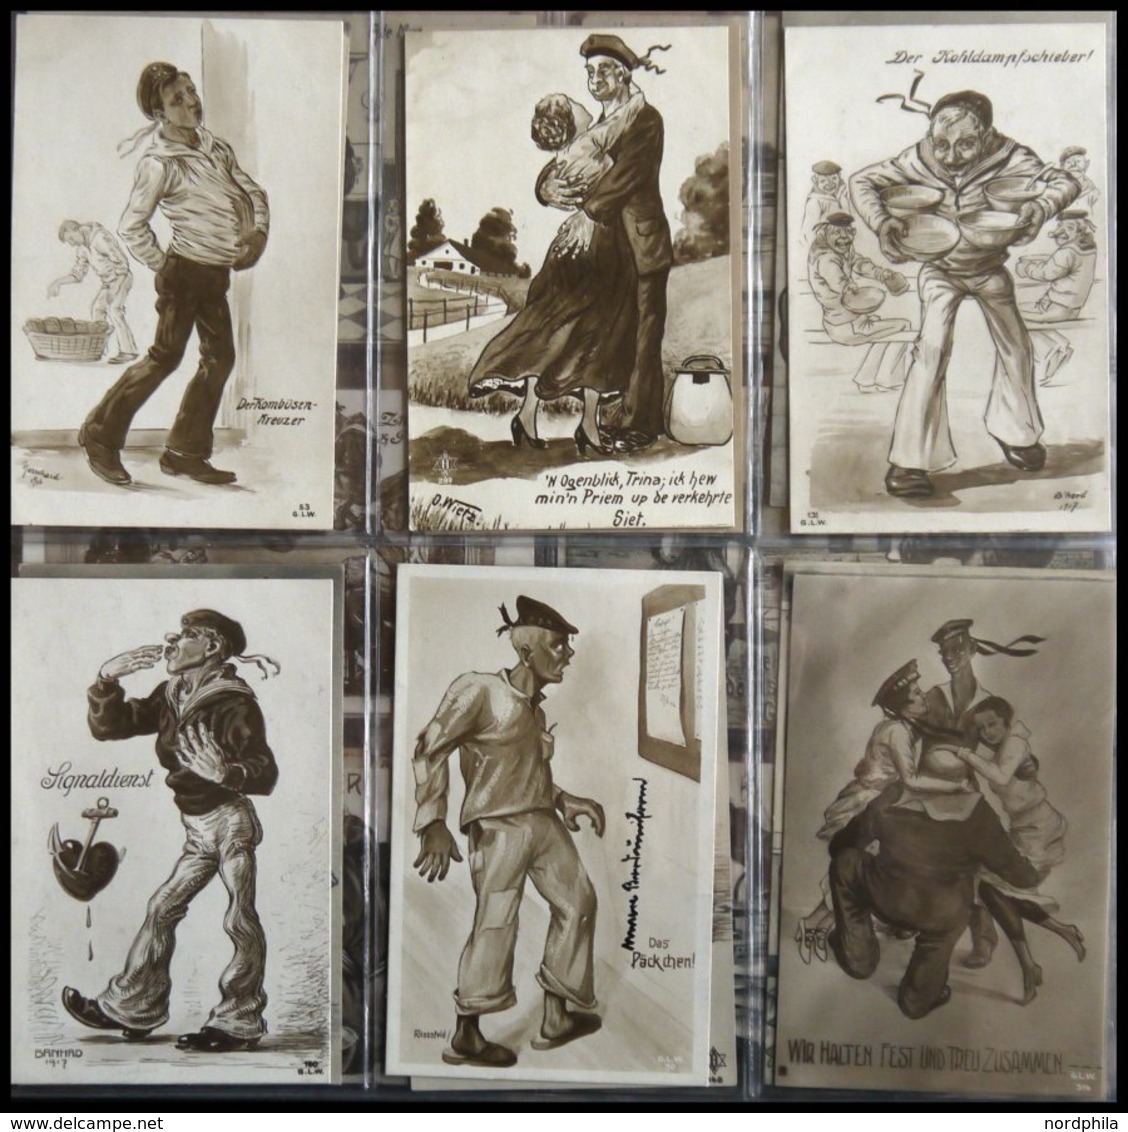 ALTE POSTKARTEN - SCHIFFE KAISERL. MARINE BIS 1918 Matrosenhumor, interessante Sammlung von 80 meist gebrauchten Karten 